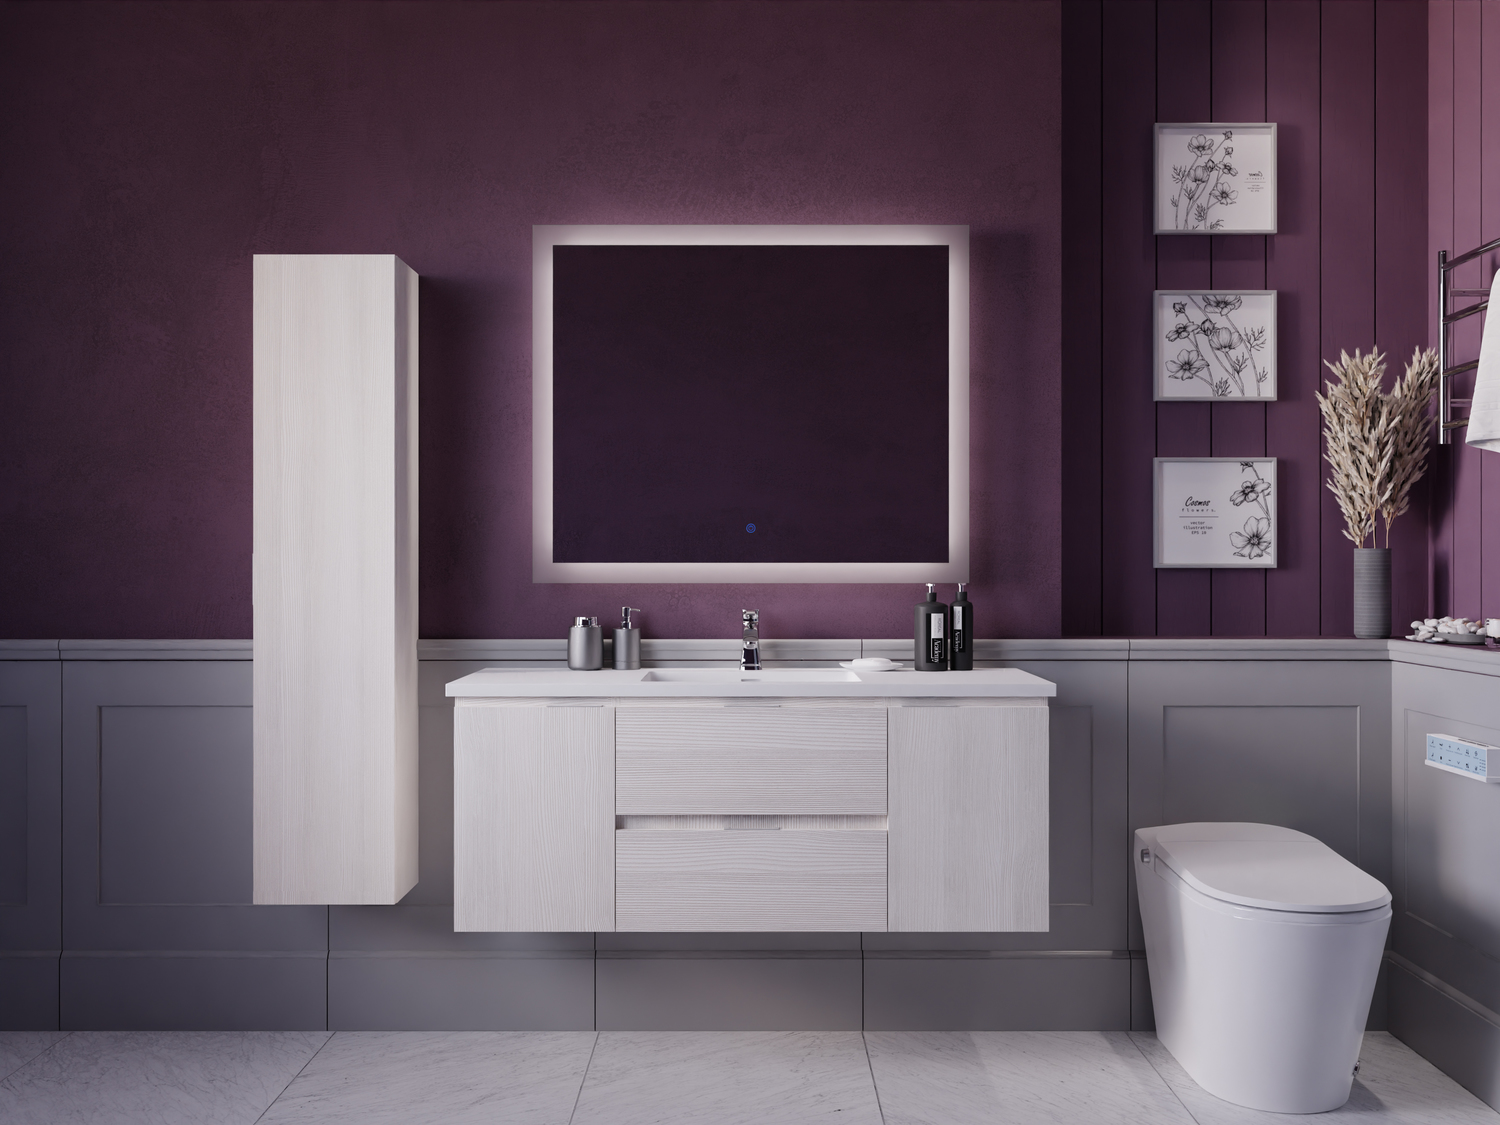 used bathroom vanity units Anzzi BATHROOM - Vanities - Vanity Sets White